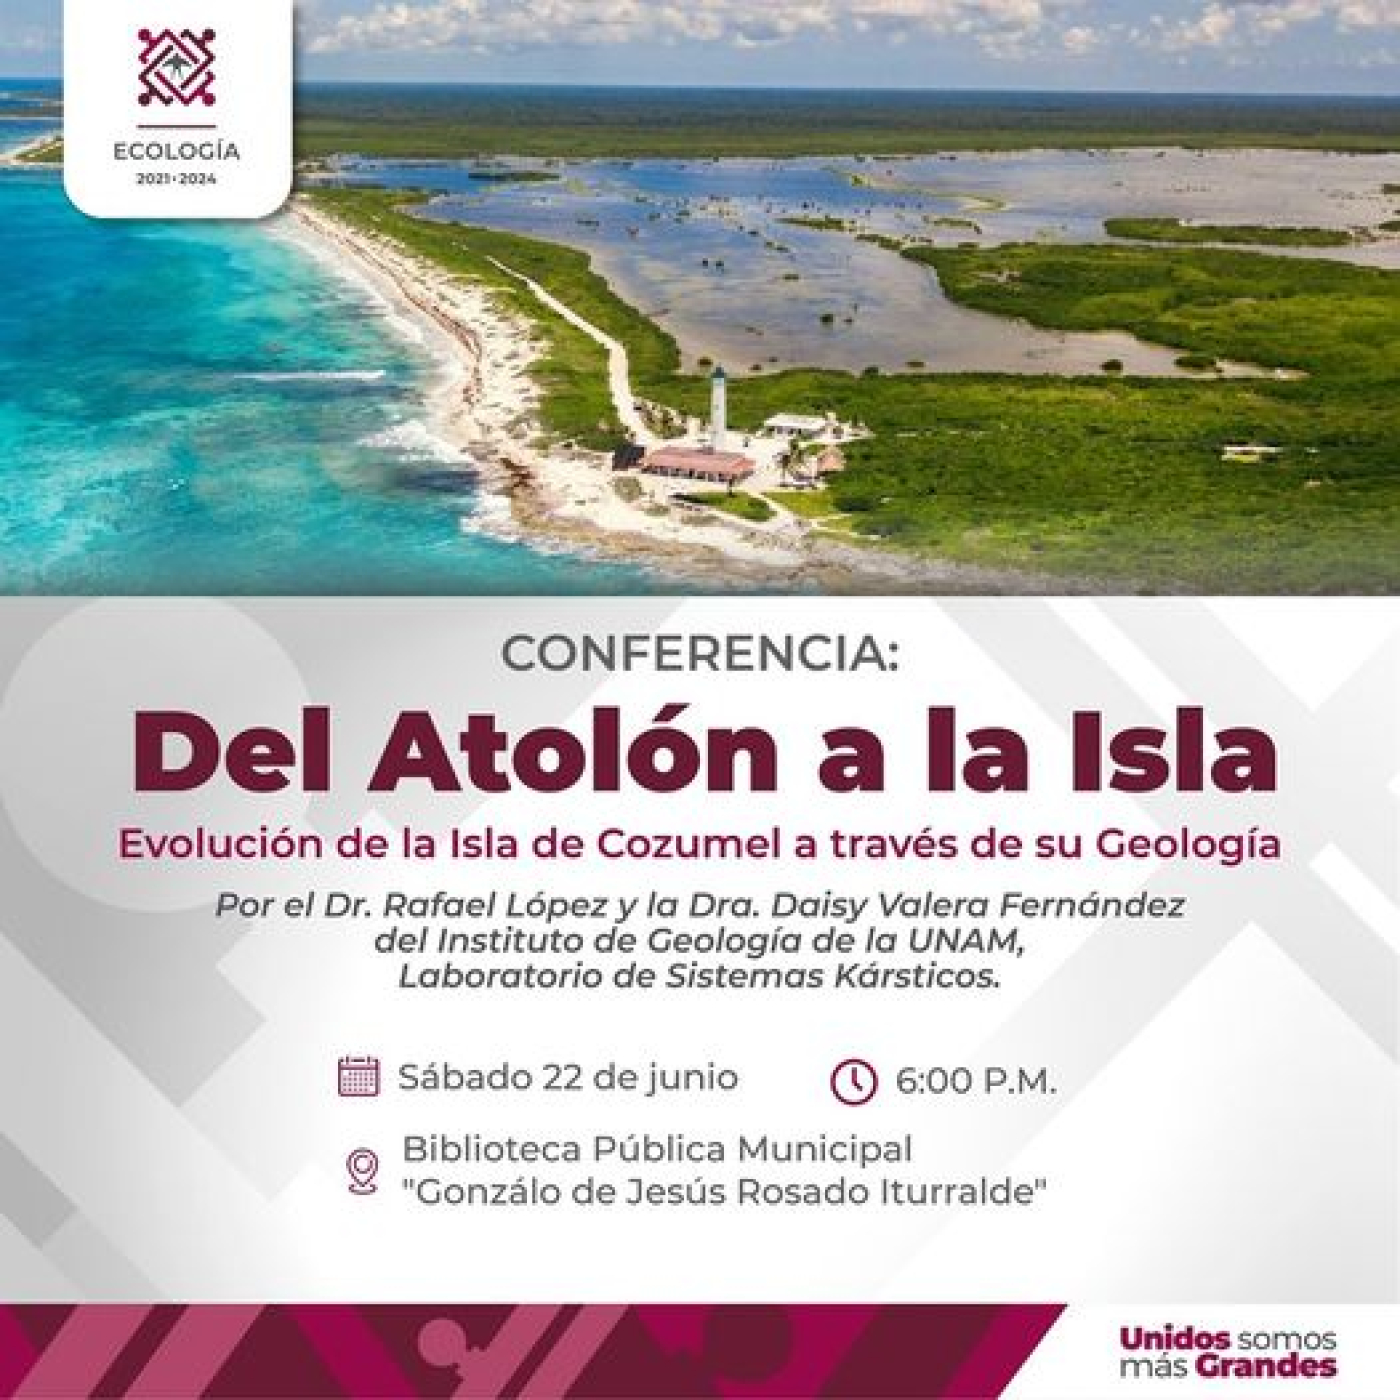 Invitan a la conferencia “Del Atolón a la Isla: evolución de la Isla de Cozumel”